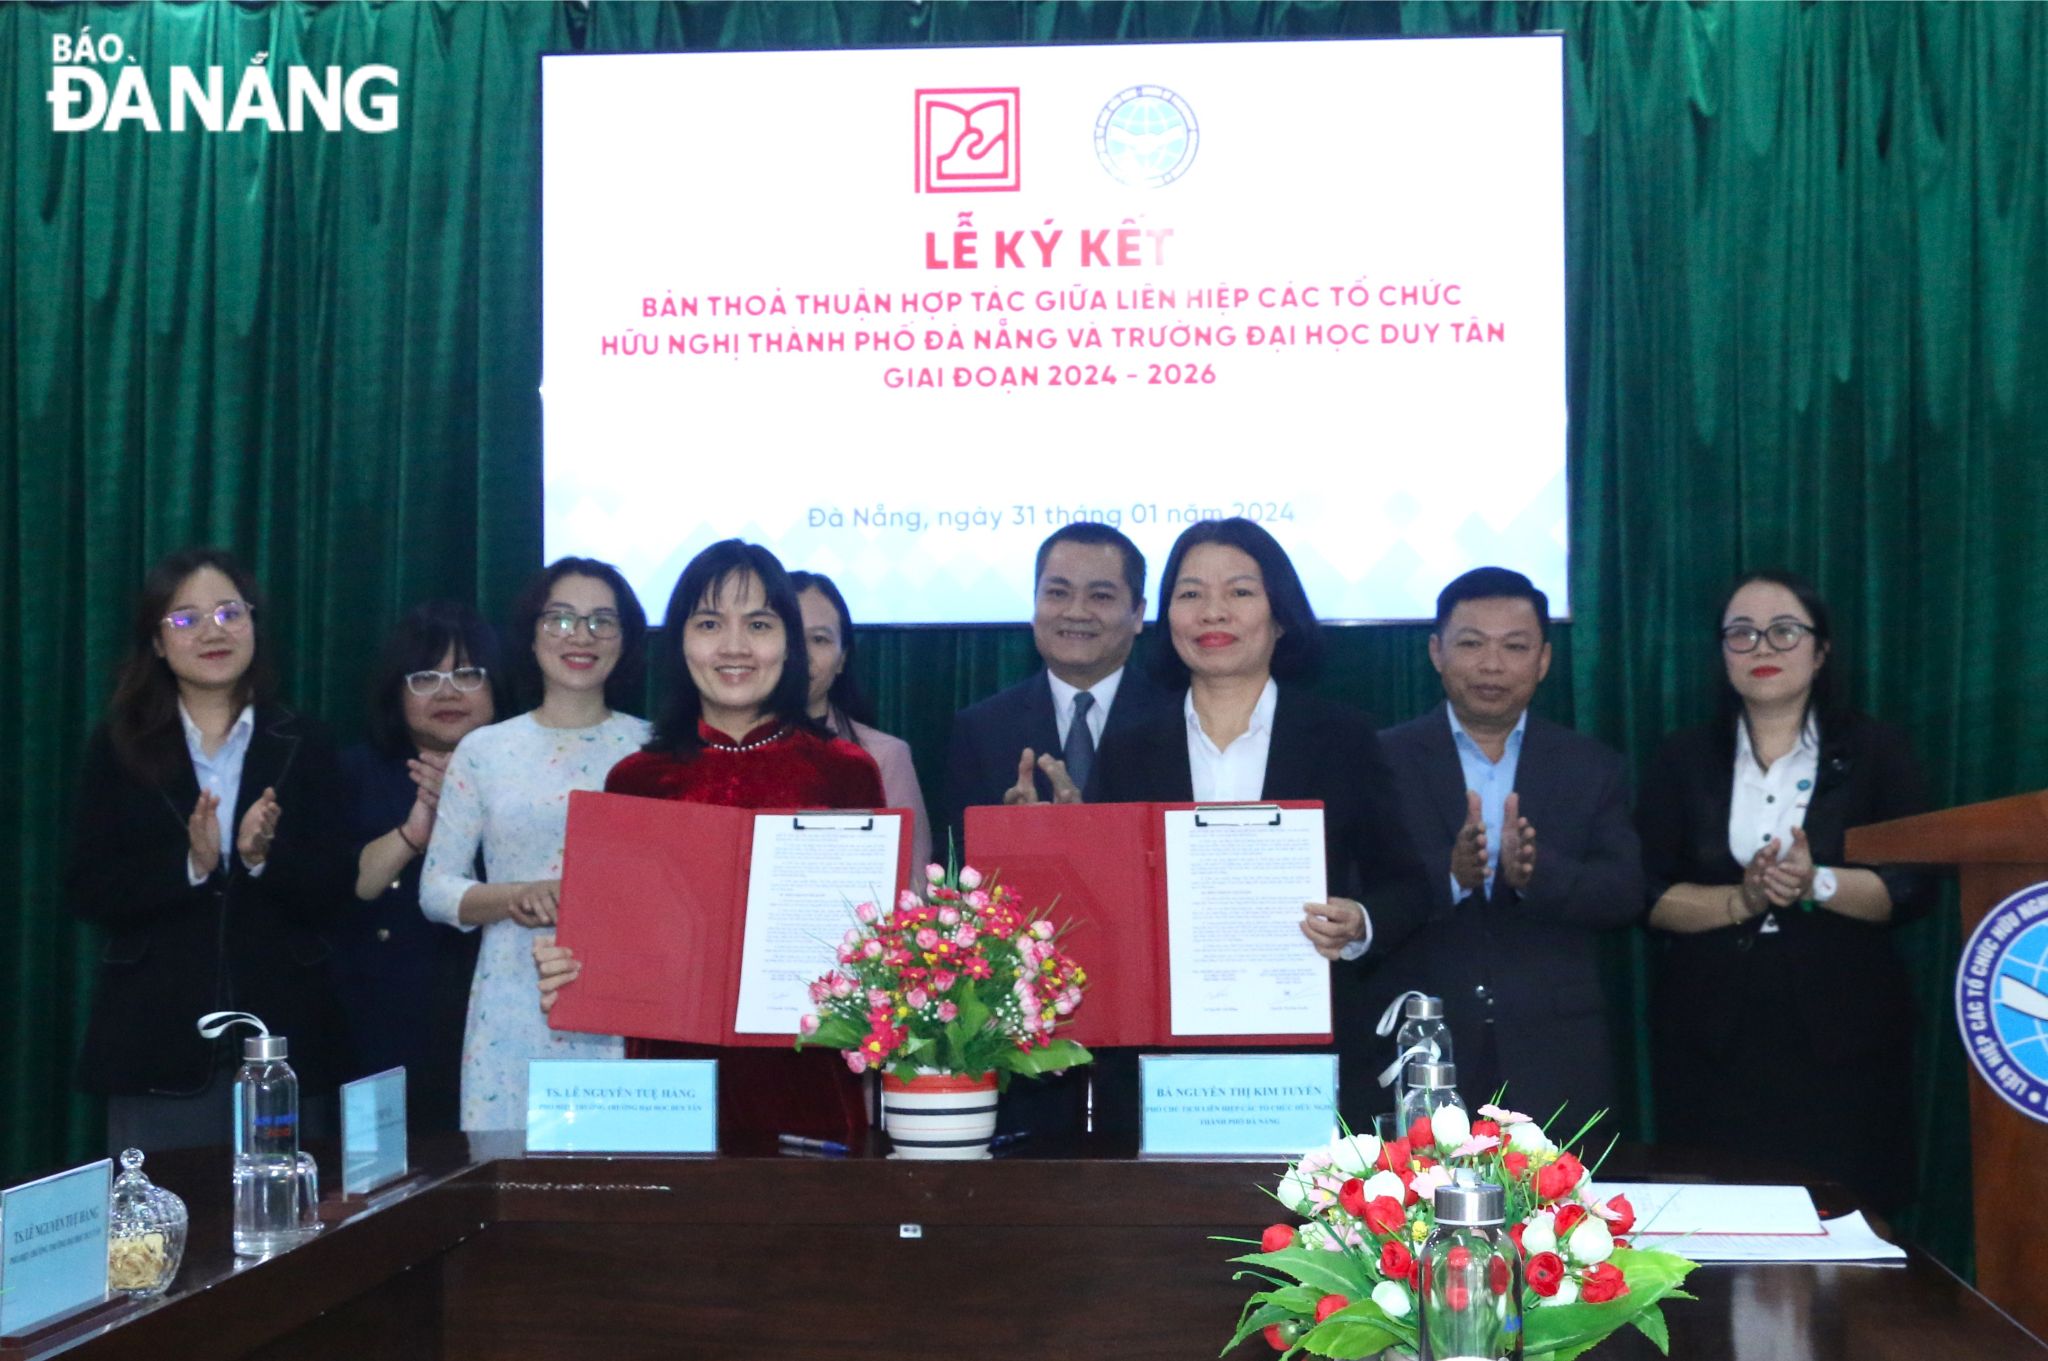 Chủ tịch Liên hiệp các tổ chức hữu nghị thành phố Nguyễn Ngọc Bình (thứ 3, từ phải sang) chứng kiến lễ ký kết. Ảnh: T.P